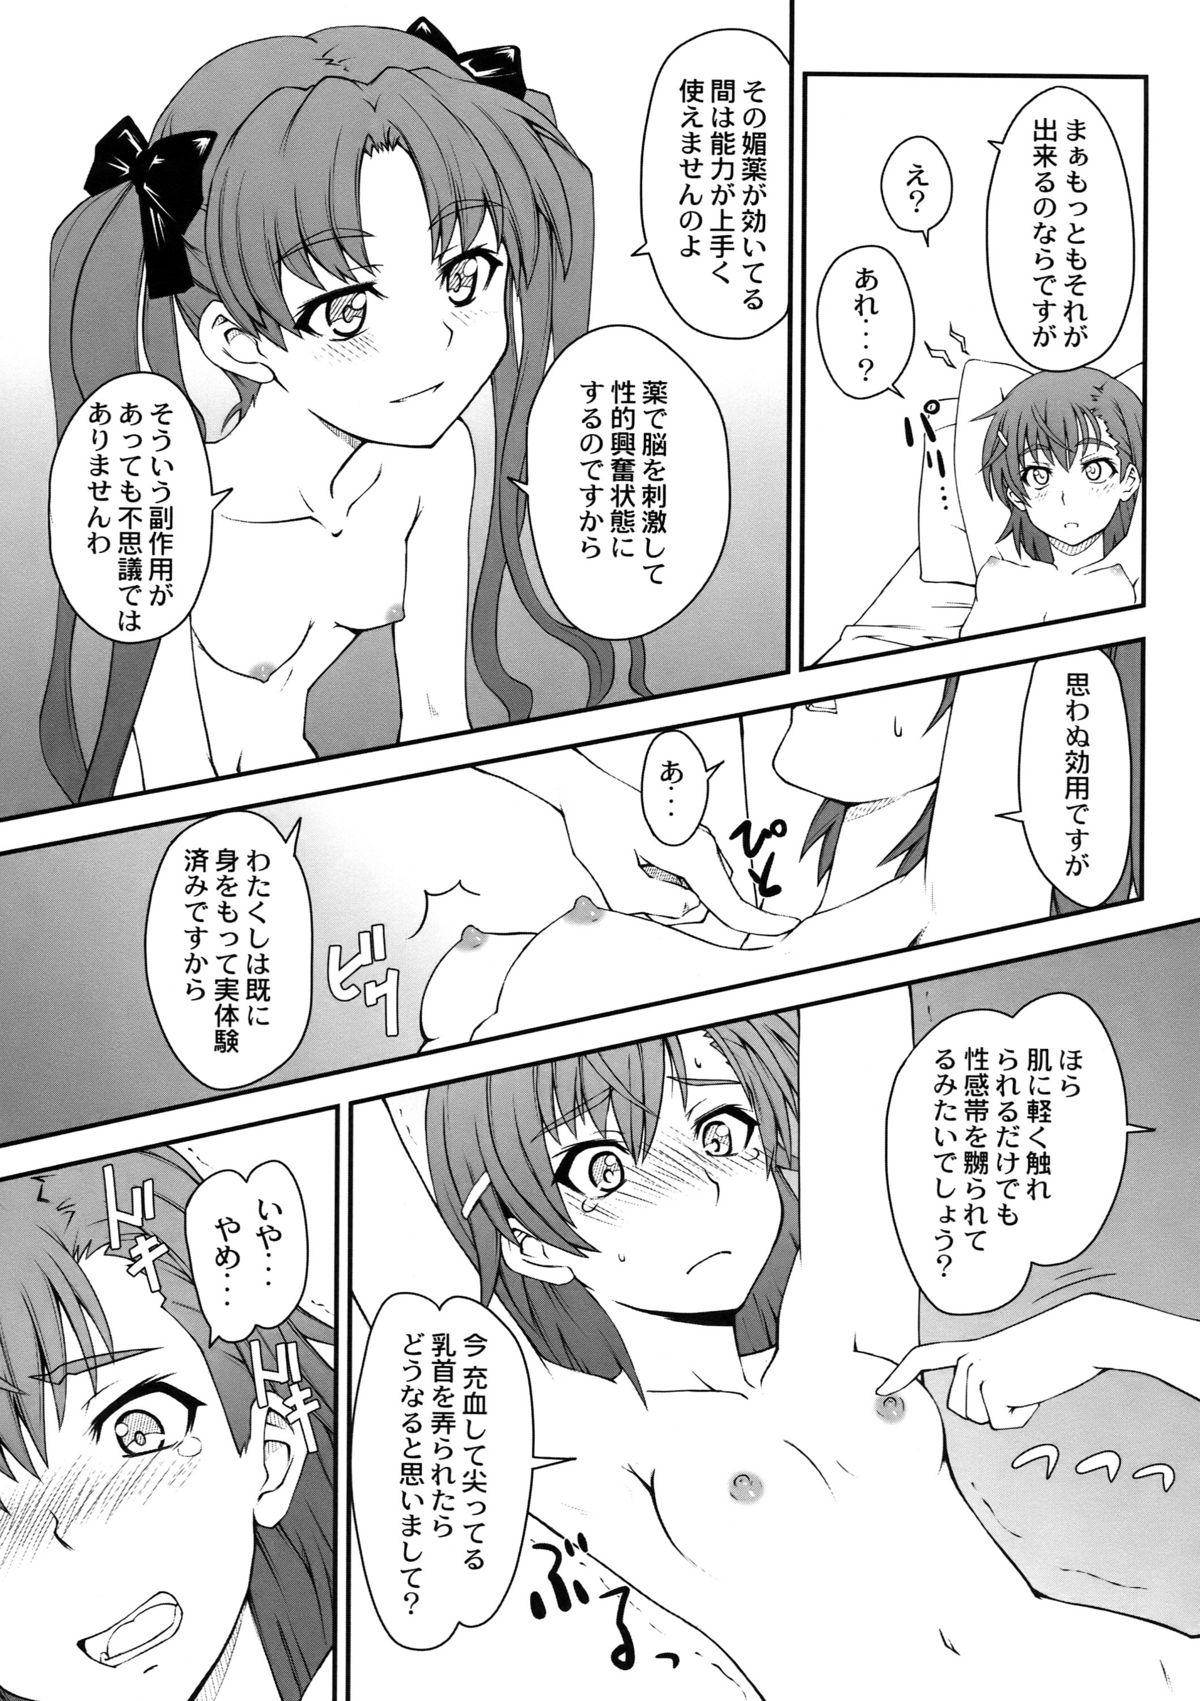 Cheat Onnanoko Doushi toka Suki dakara! 2 - Toaru kagaku no railgun Strapon - Page 11